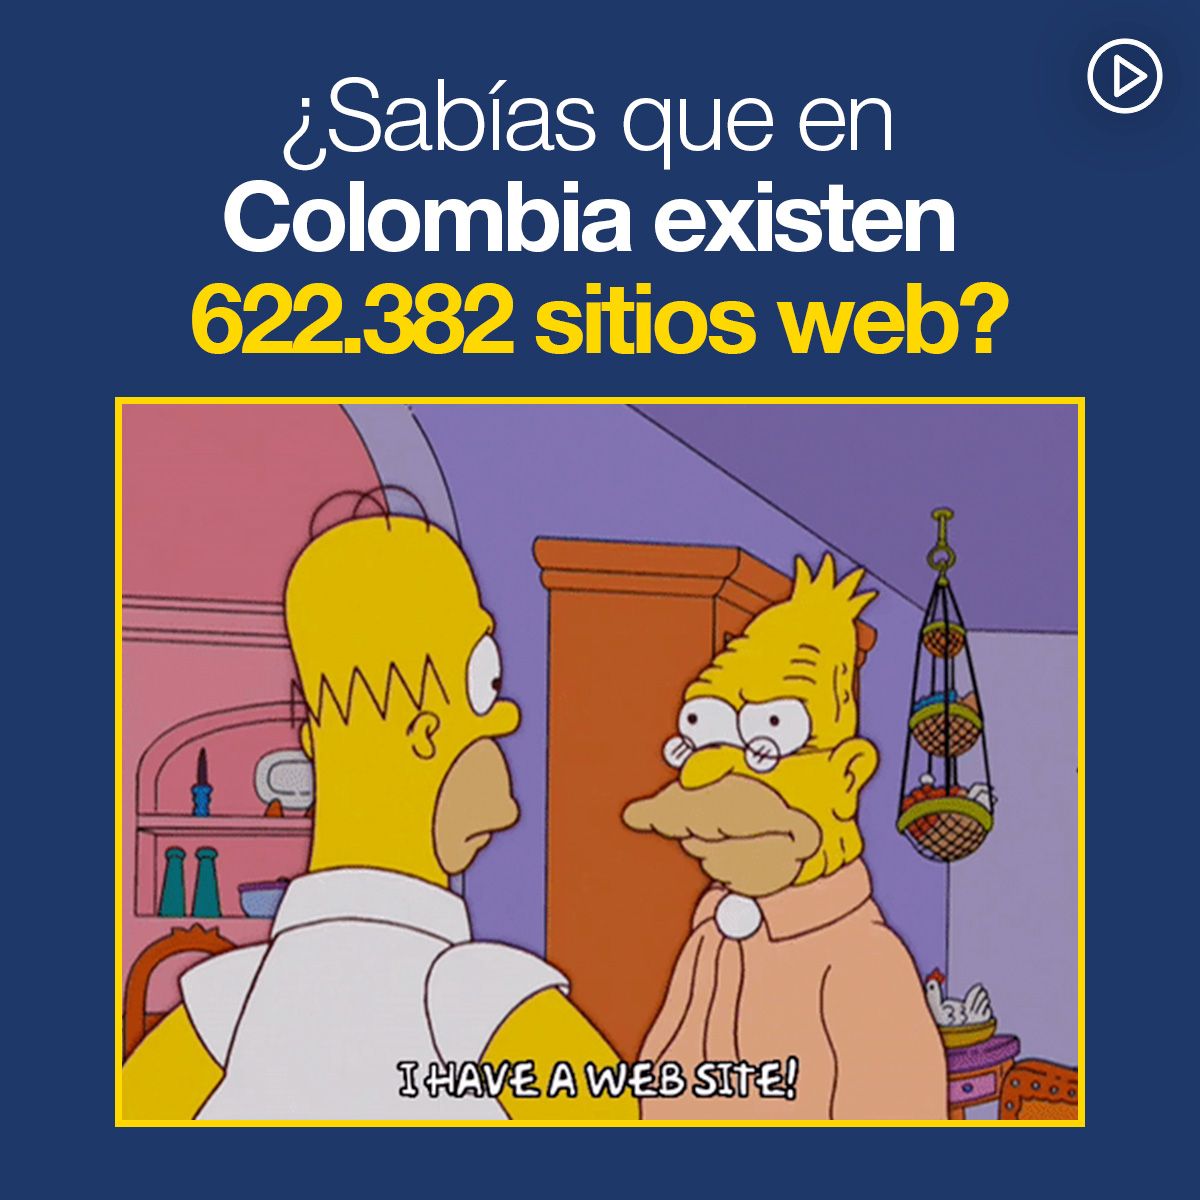 ¿Sabias que en Colombia existen 622.382 sitios web?